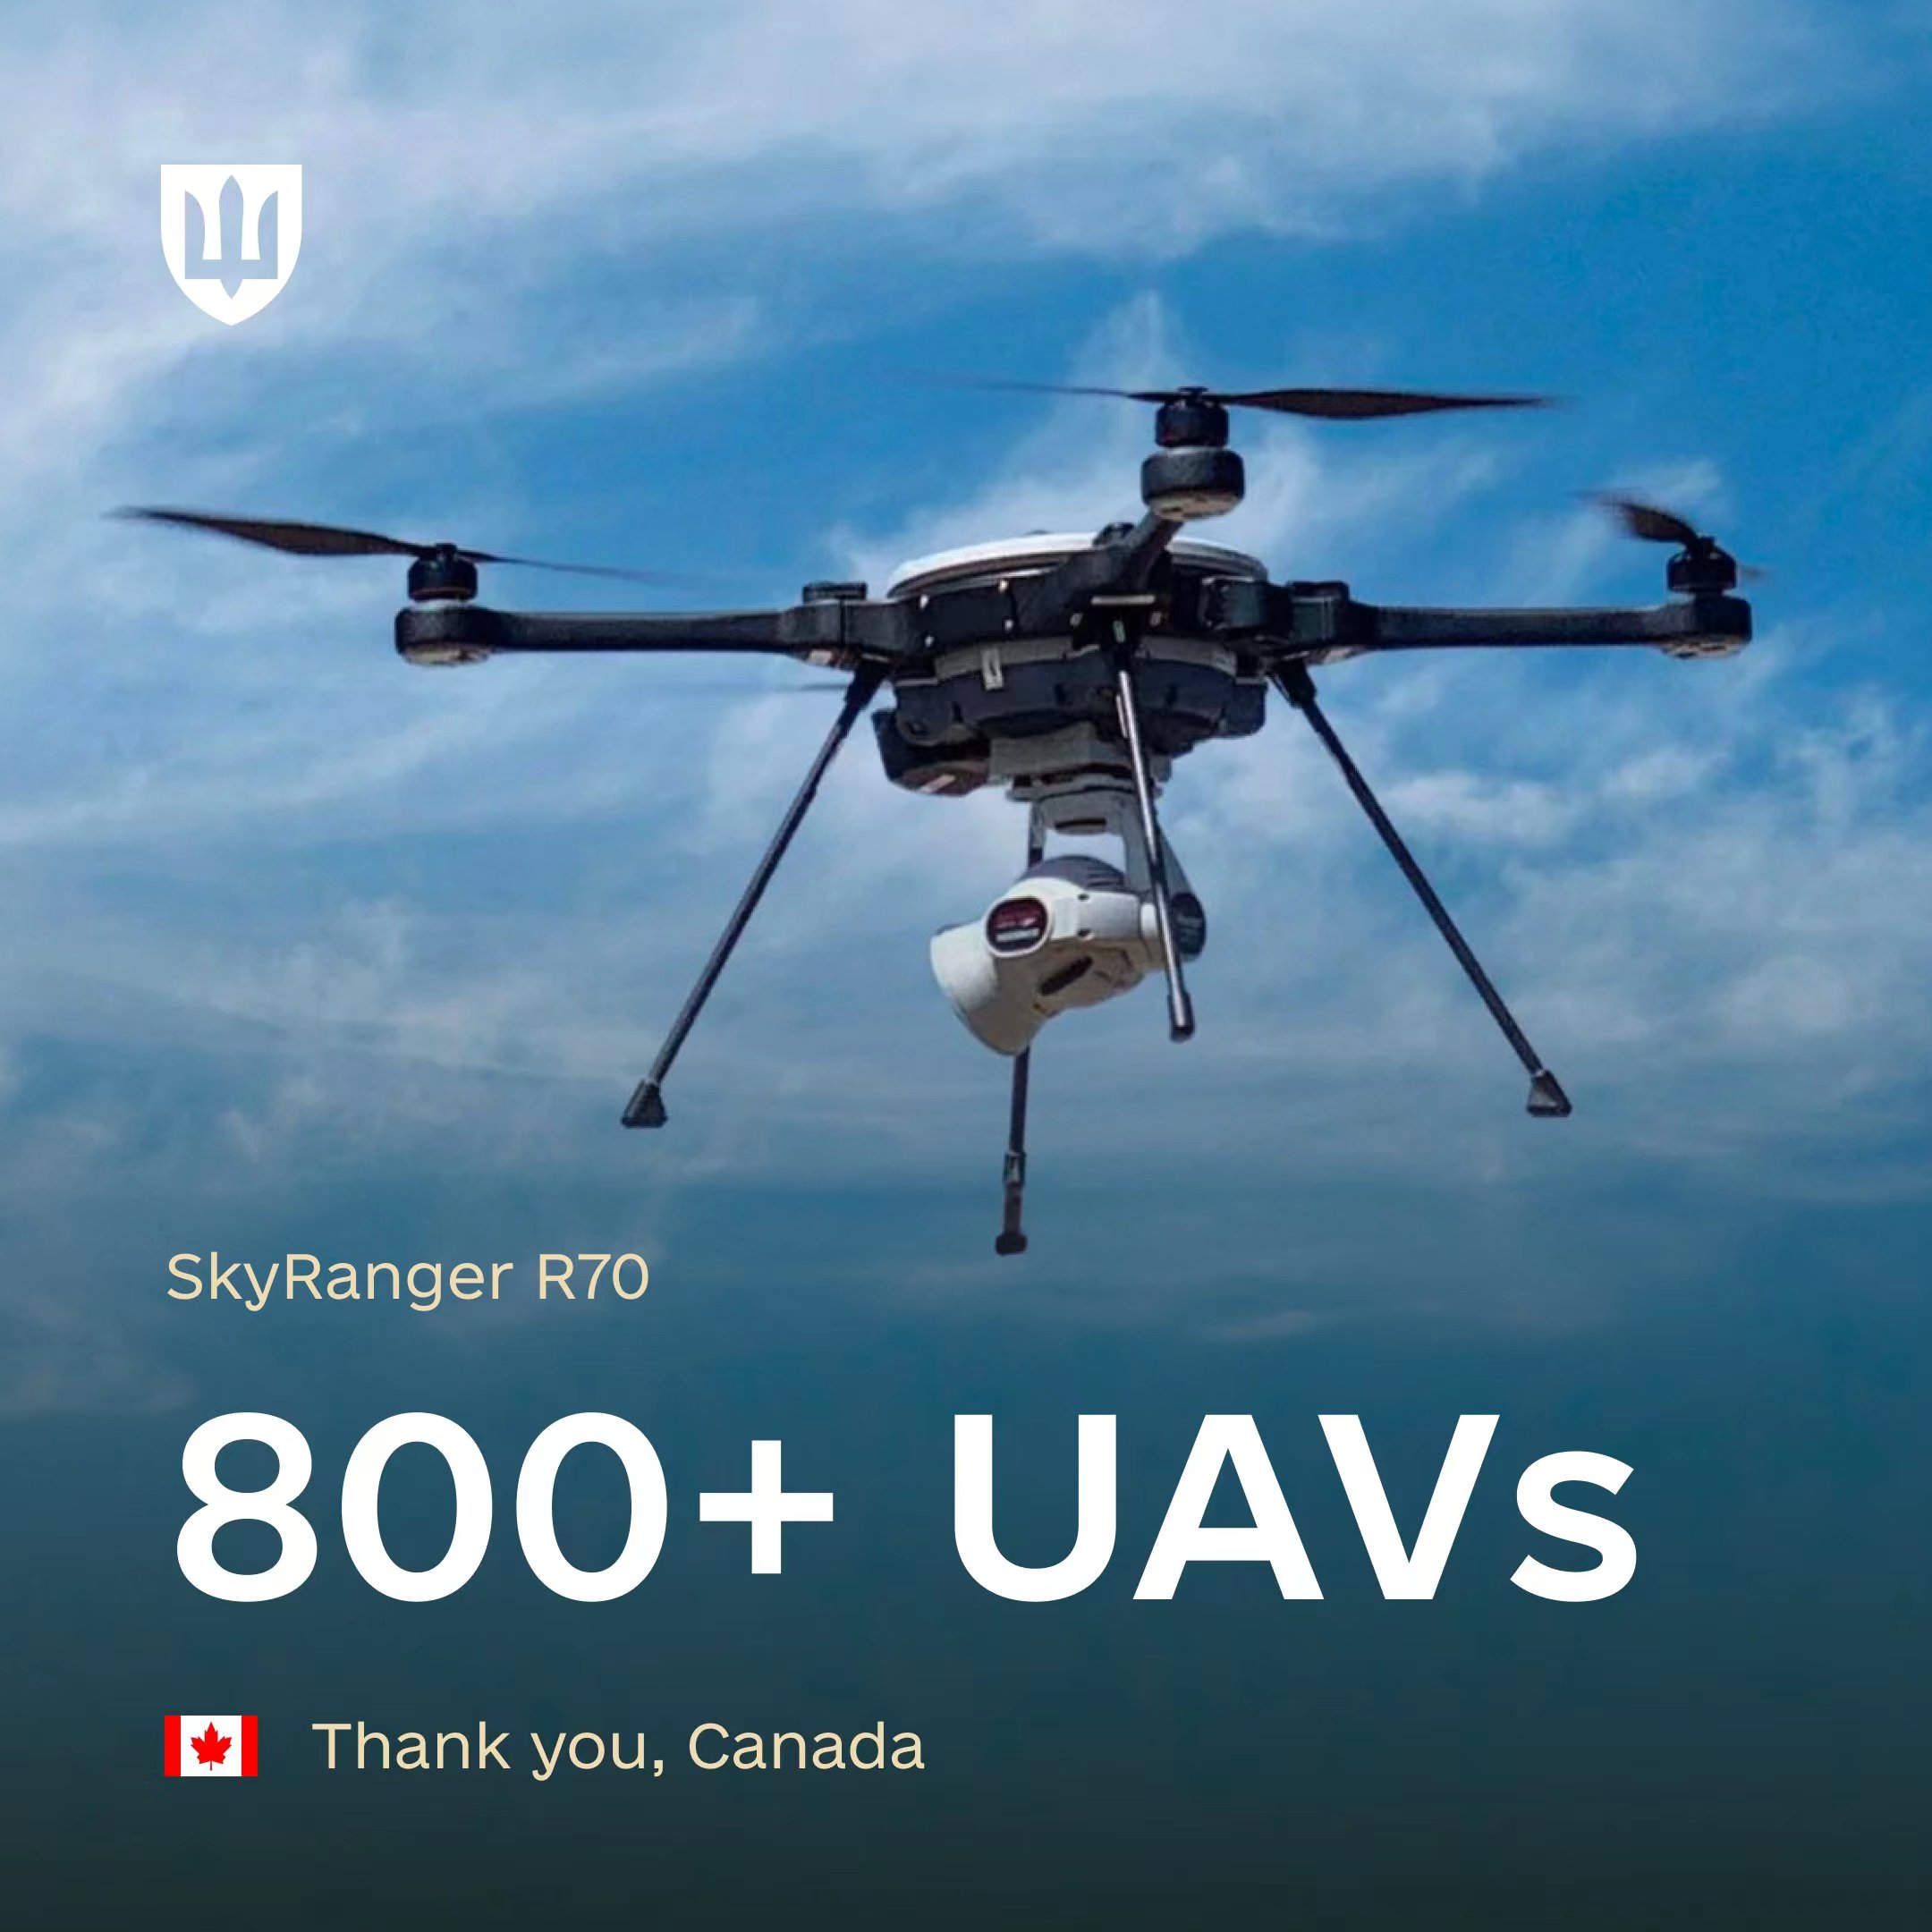 加拿大向乌克兰捐赠800多架SkyRanger R70无人机